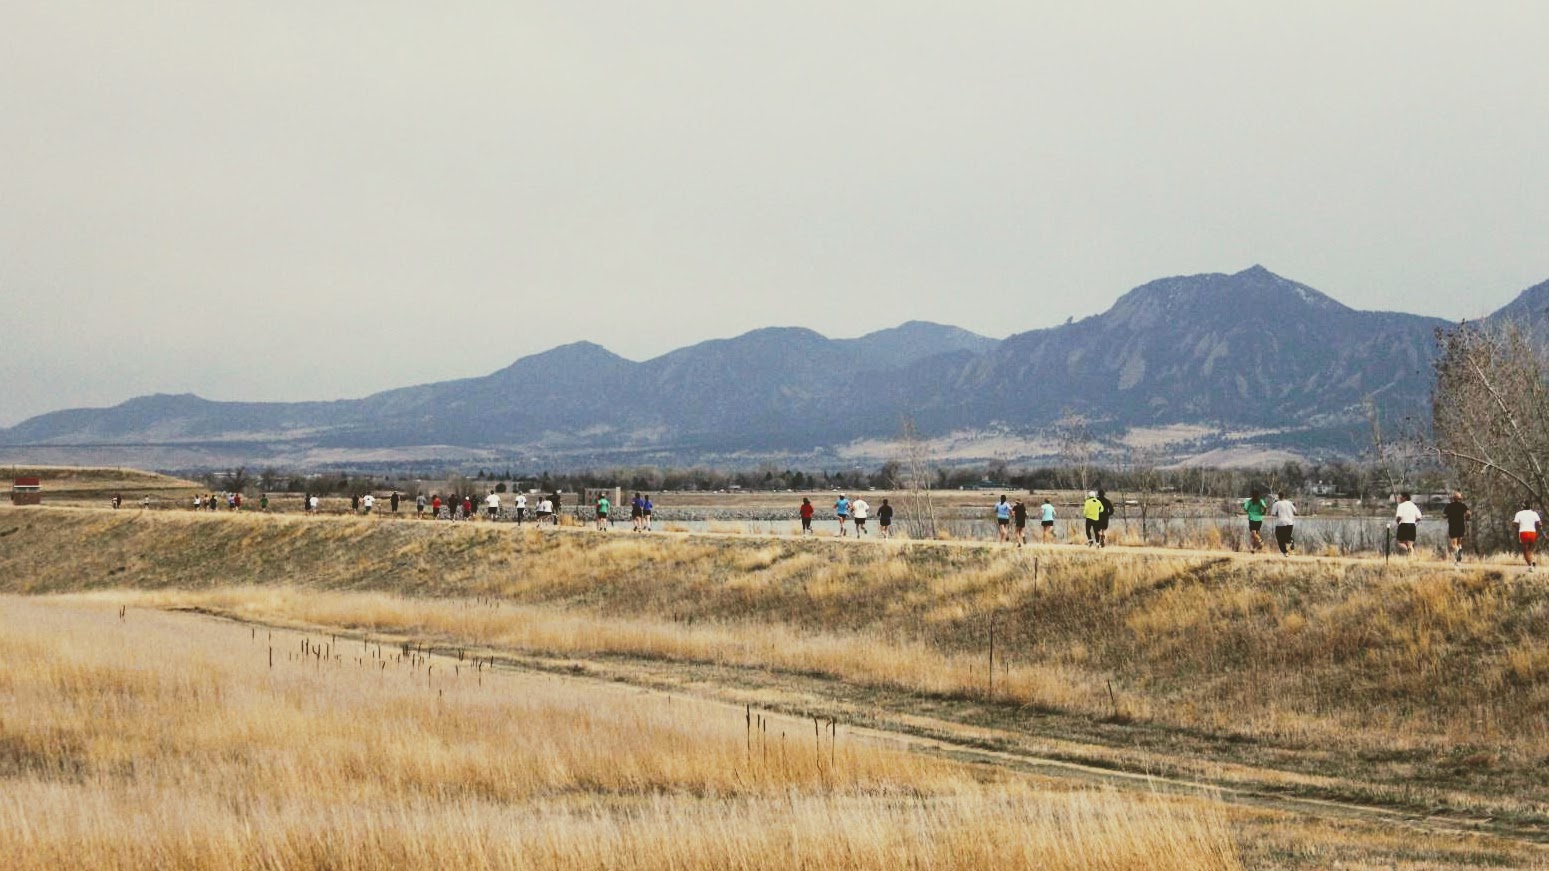 5k race in Boulder, CO